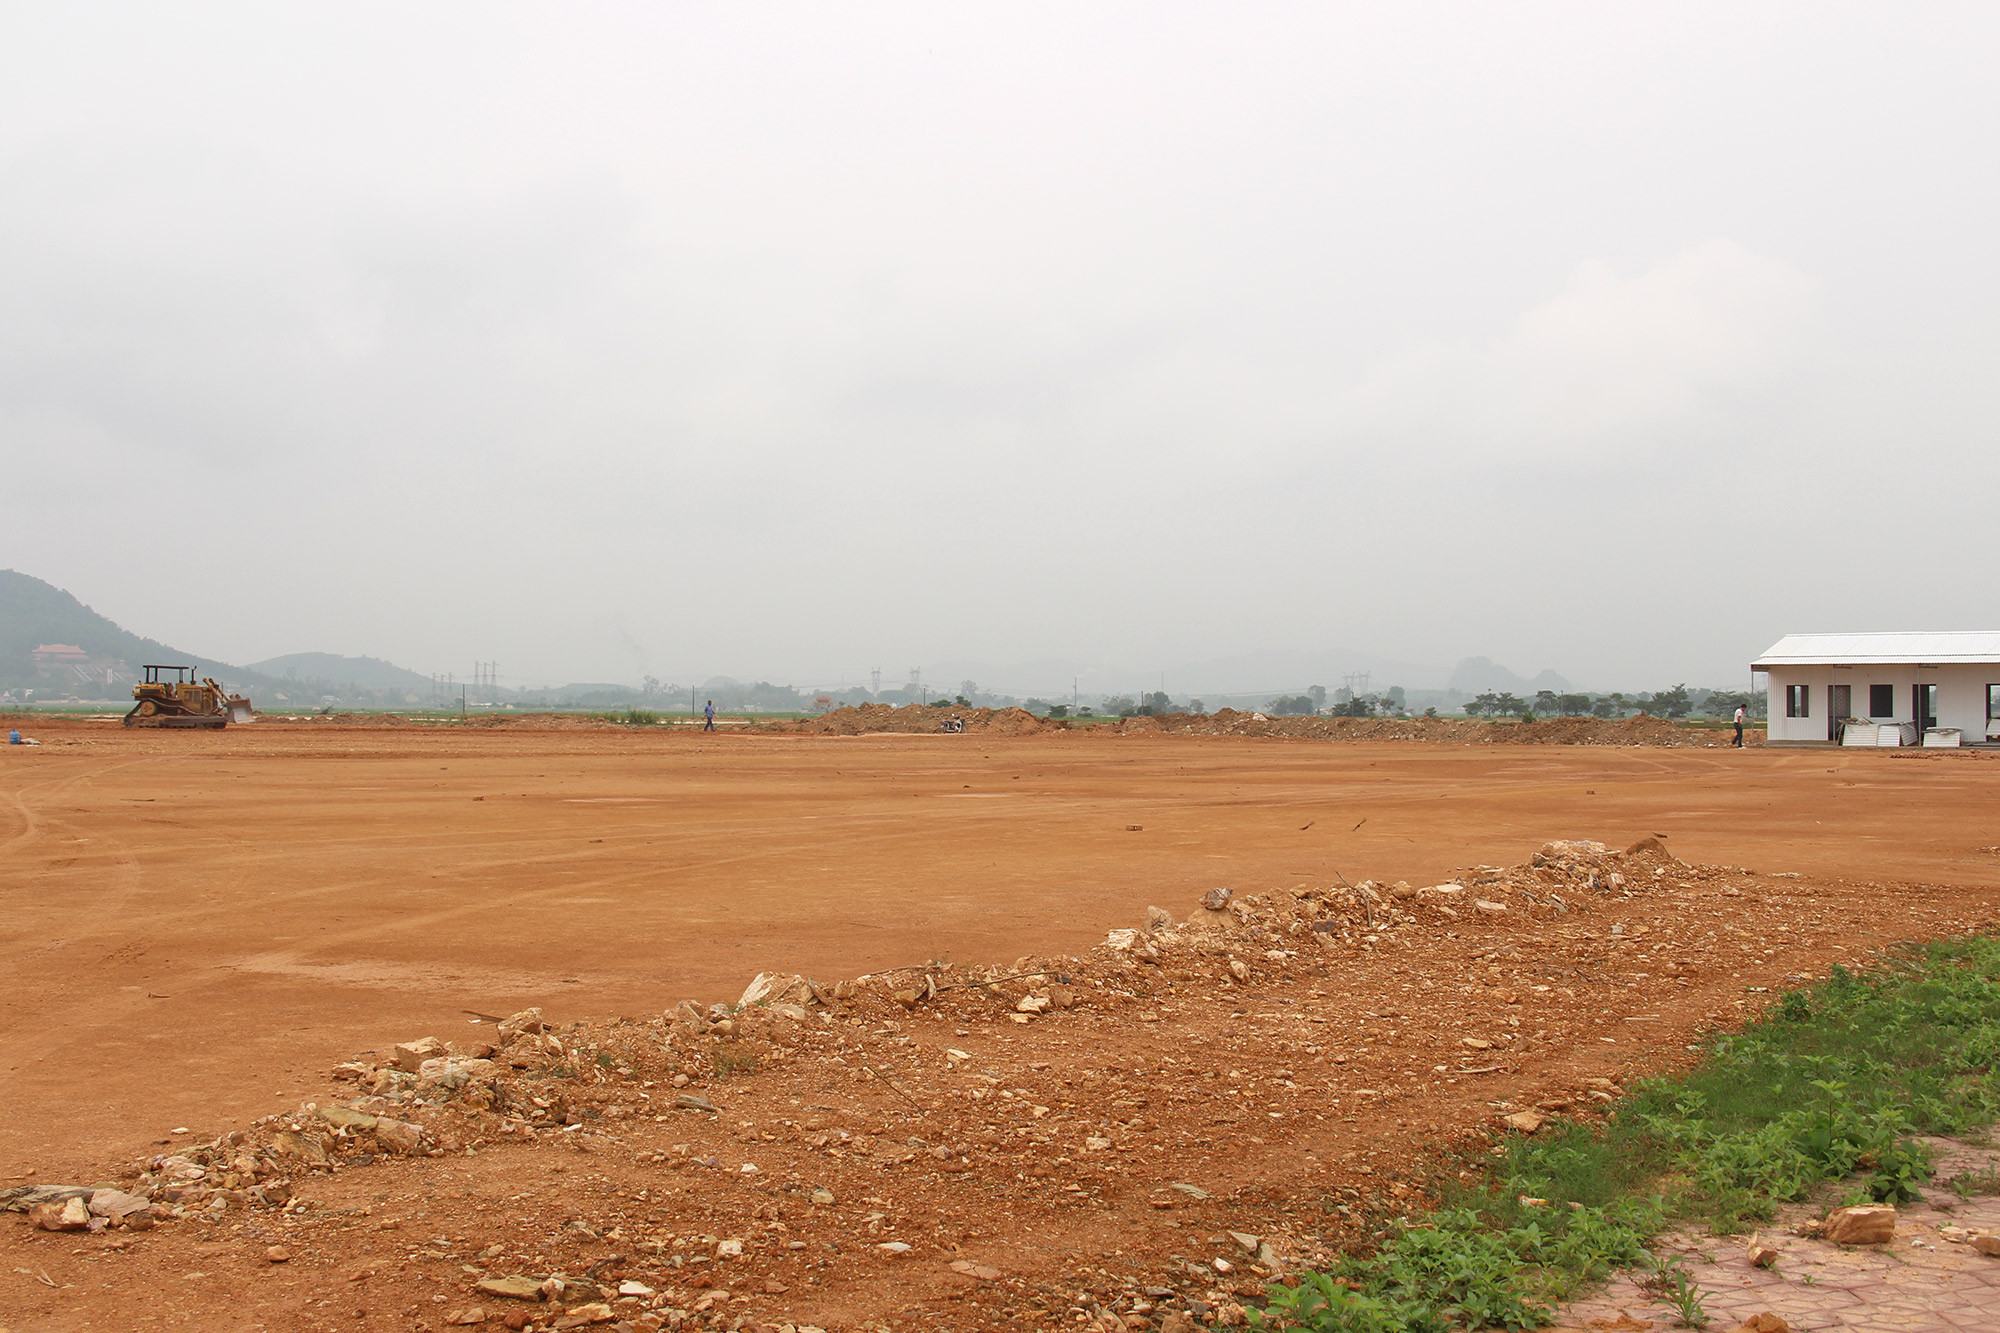 San lấp măt bằng Dự án liên kết sản xuất lúa gạo sạch của tập đoàn TH tại cụm công nghiệp thị trấn Yên Thành. Ảnh: Văn Trường